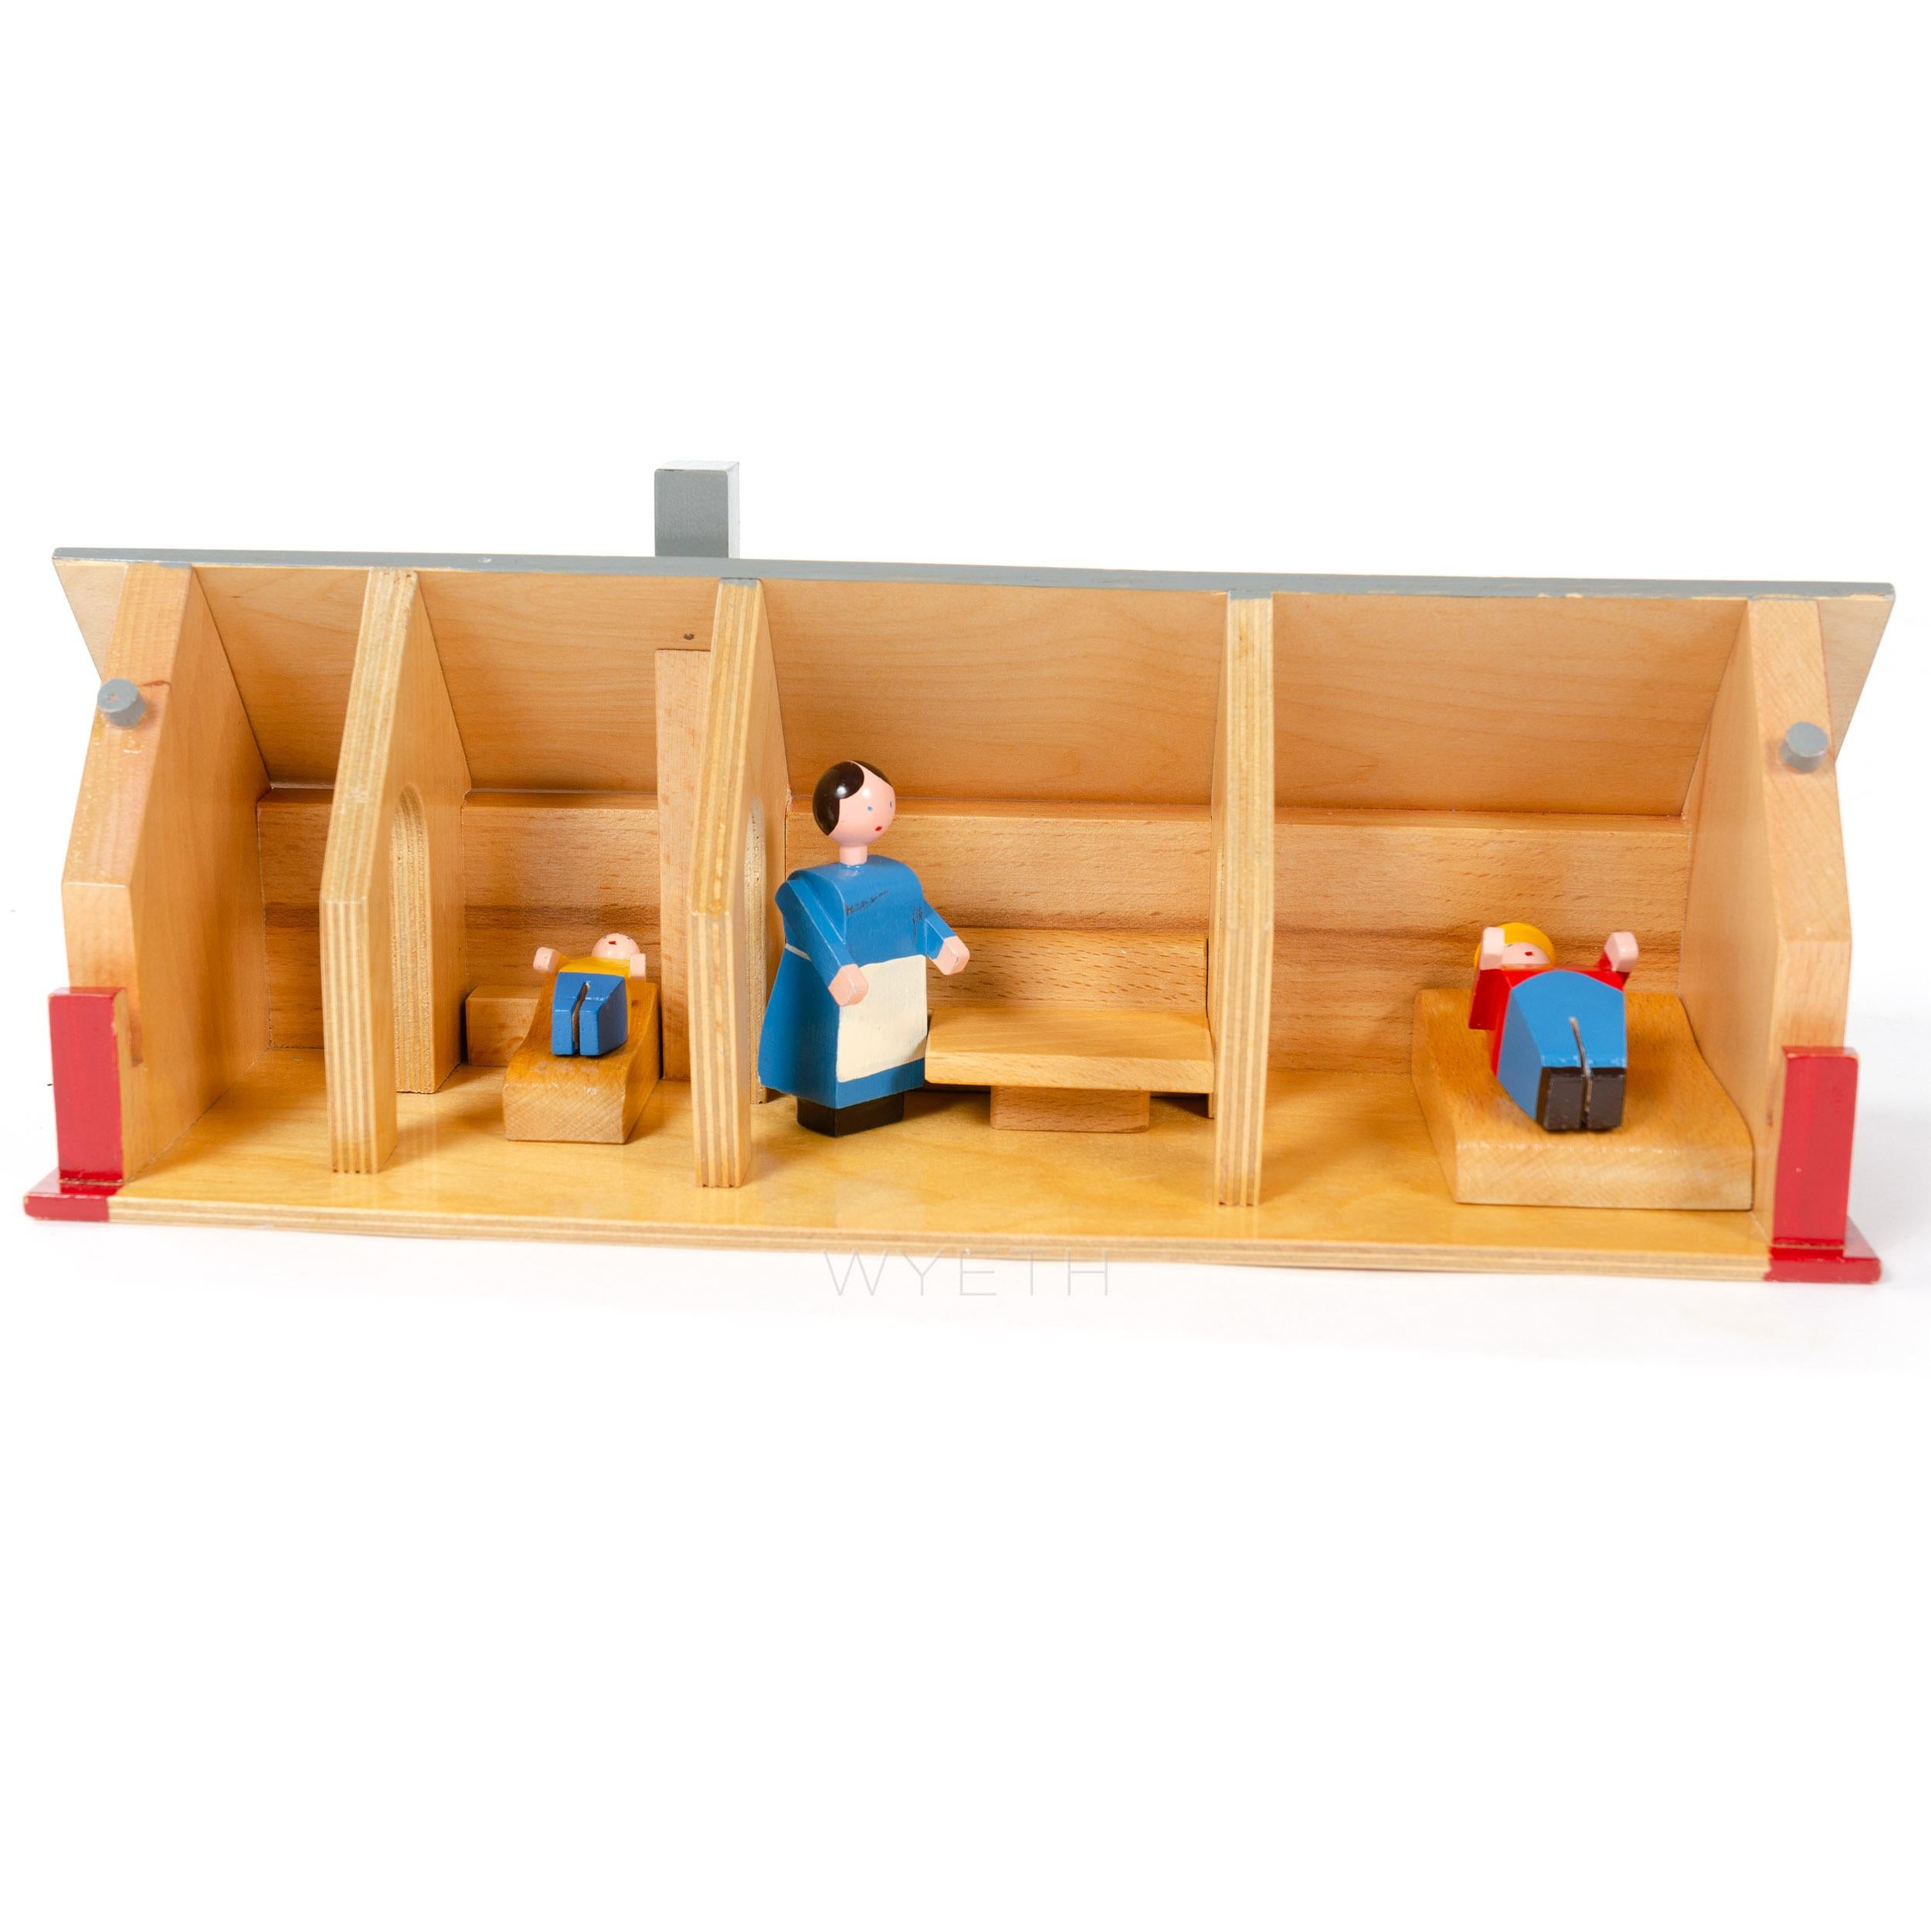 wooden farmhouse toy